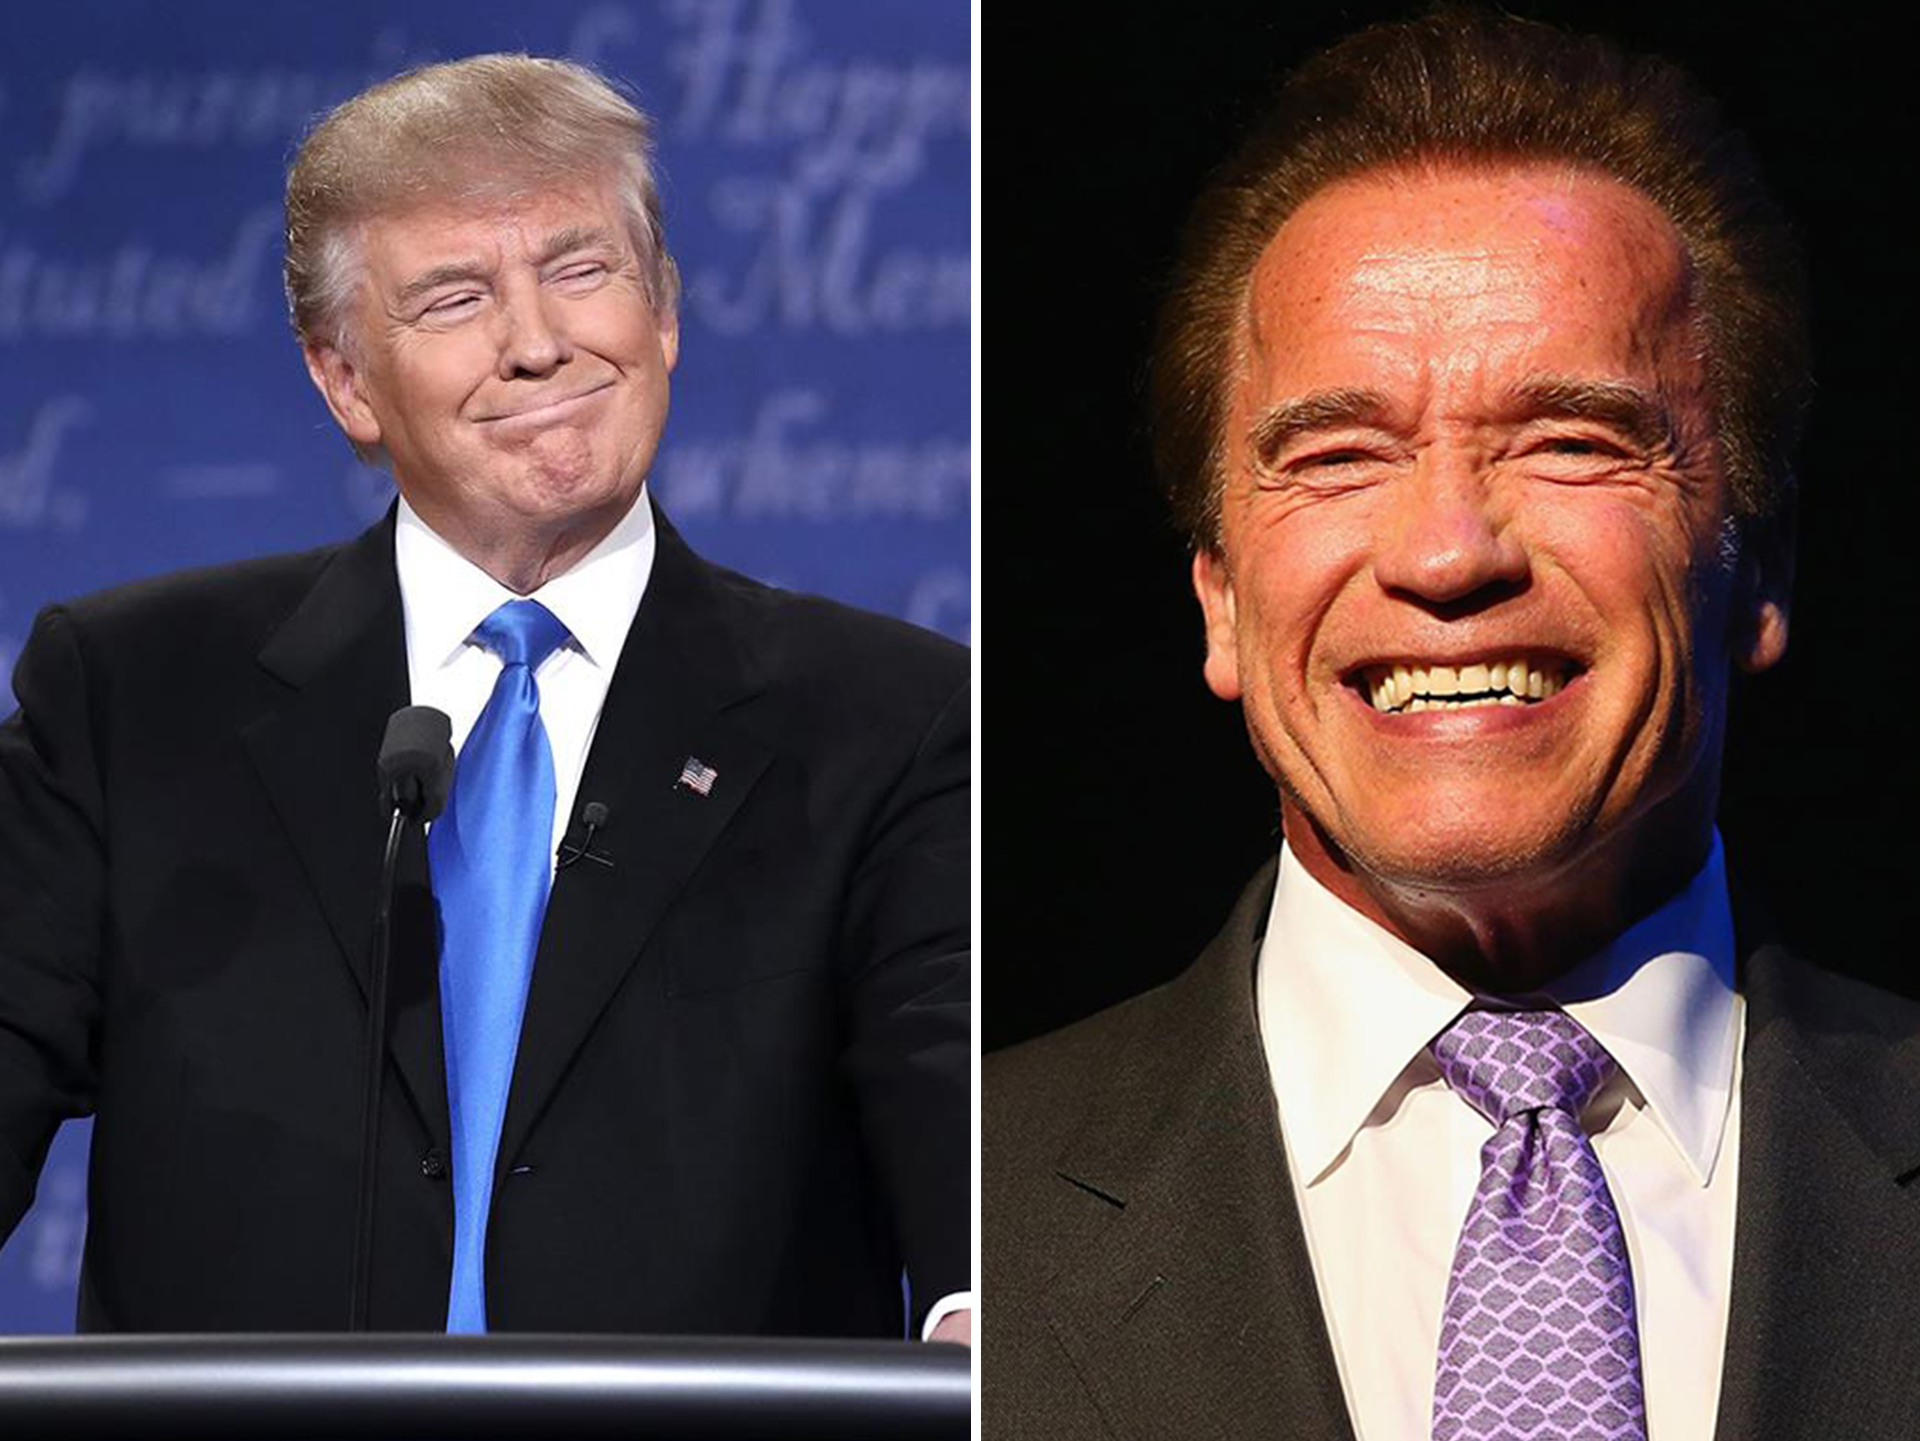 Arnold Schwarzenegger to host Celebrity Apprentice